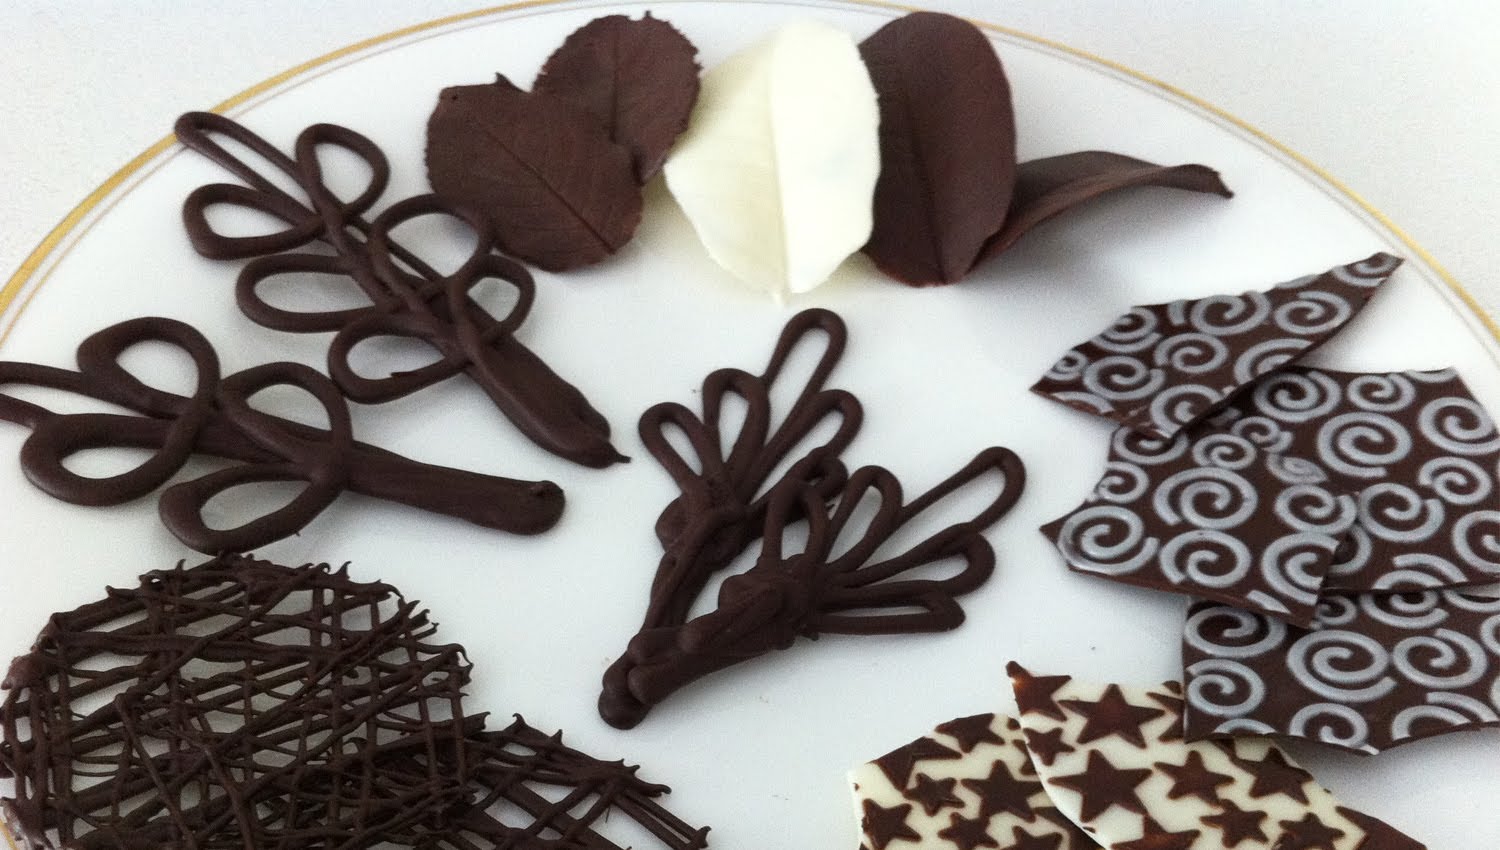 Choco decoration на русском. Украшения из шоколада. Украшения из шоколадной глазури. Декор из шоколада для торта. Украшение шоколадного торта.